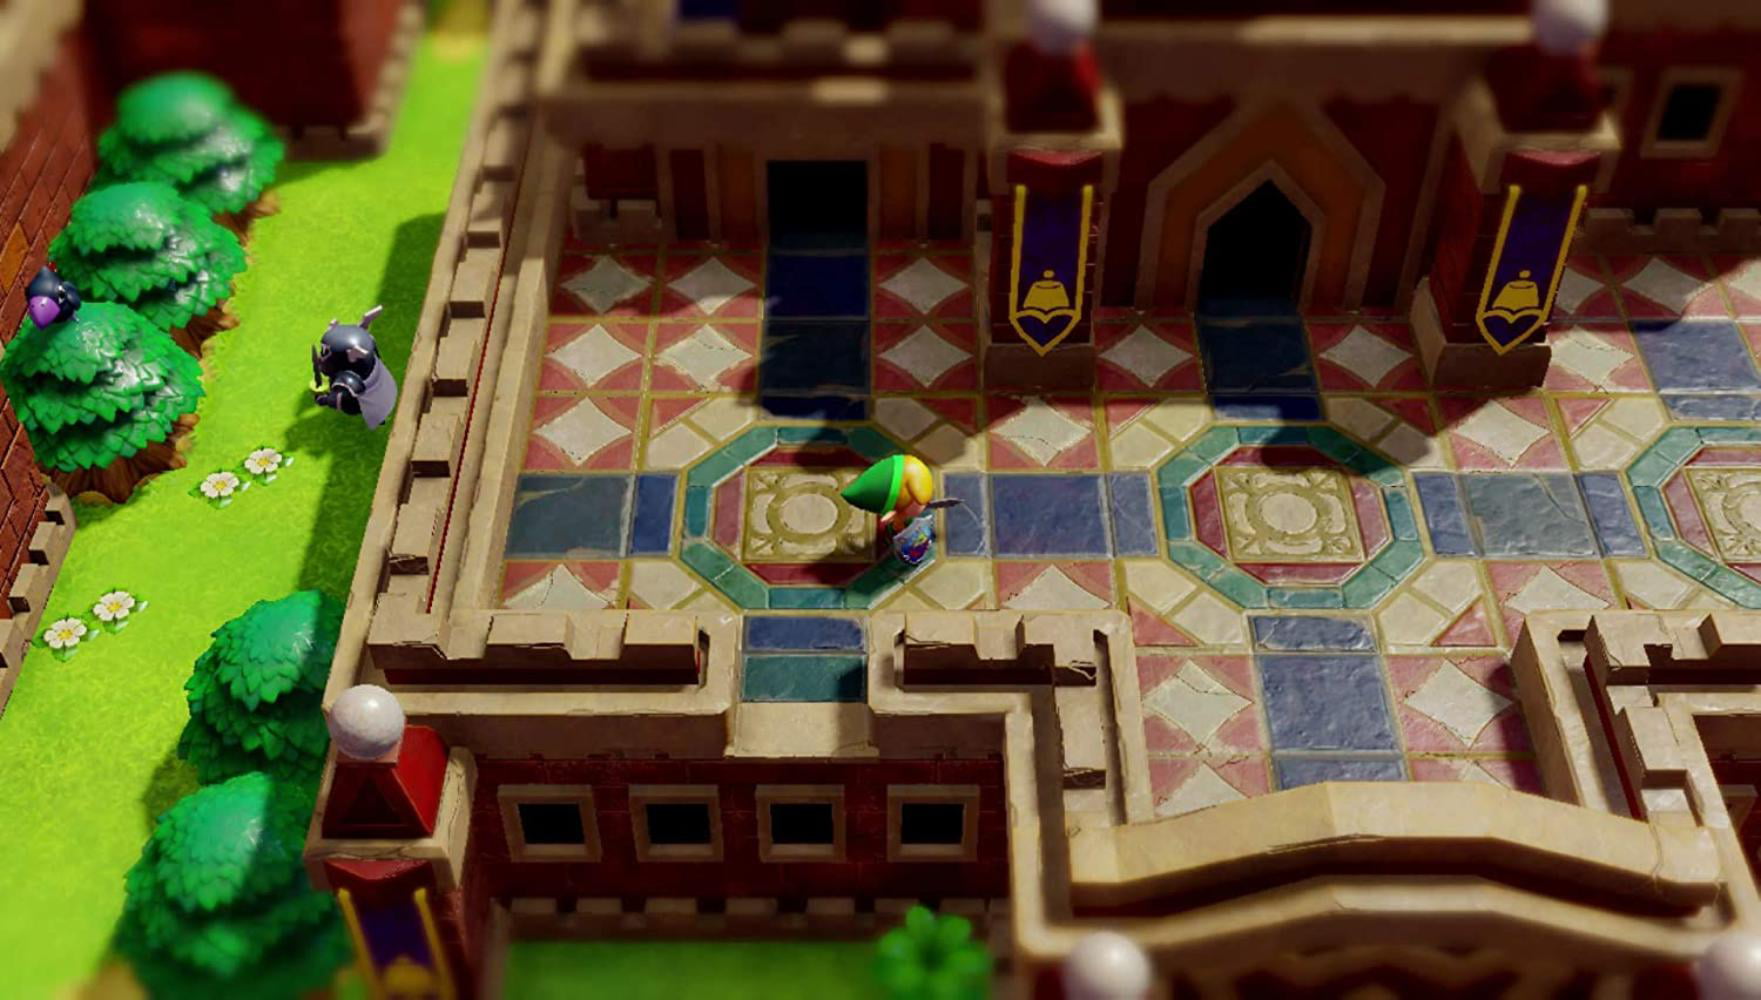 The Legend Of Zelda: Link's Awakening Sold 430,000 Copies Europe In In  Three Days – NintendoSoup